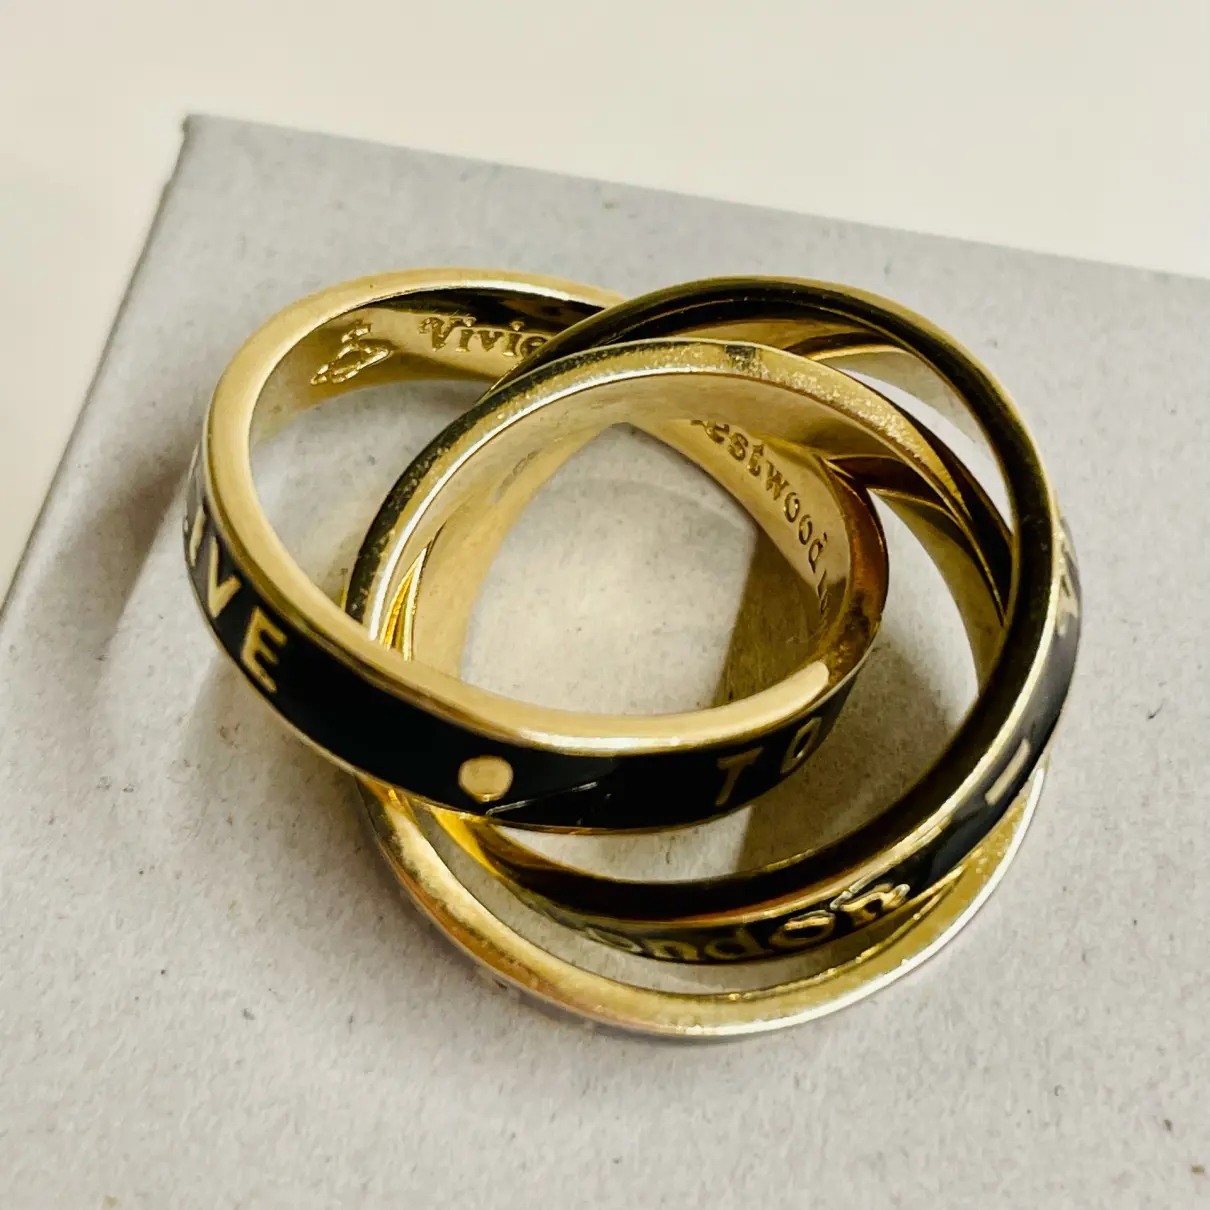 Buy Vivienne Westwood Ring online